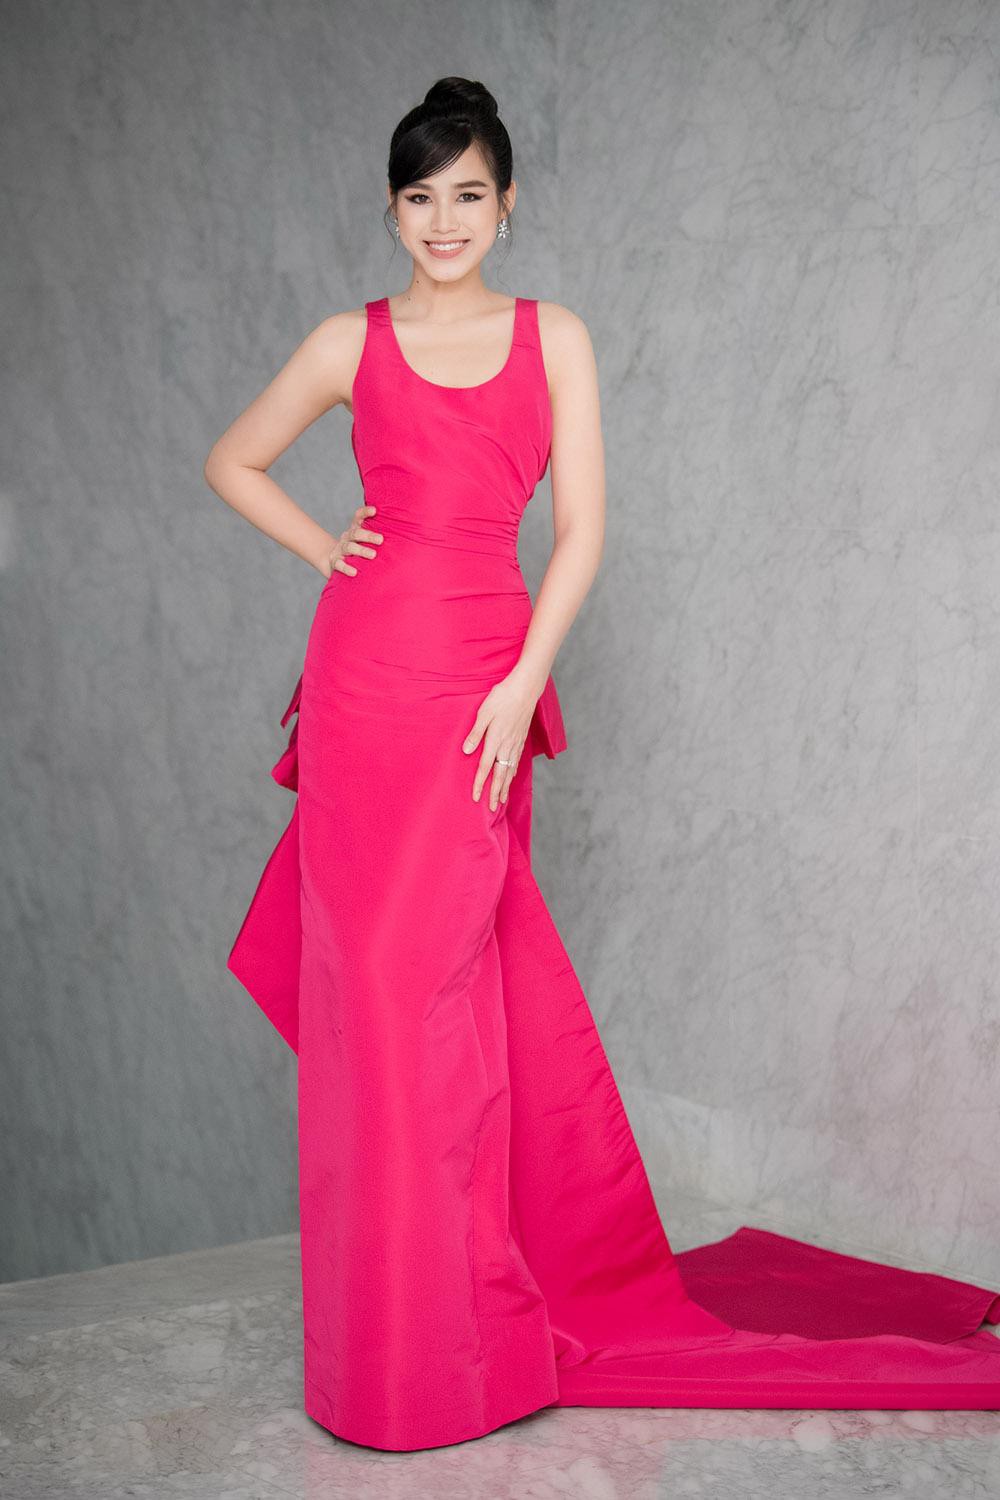 Hoa hậu Đỗ Thị Hà và Lương Thùy Linh nóng bỏng trong trang phục gam màu rực rỡ của nhà thiết kế Công Trí - Ảnh 1.